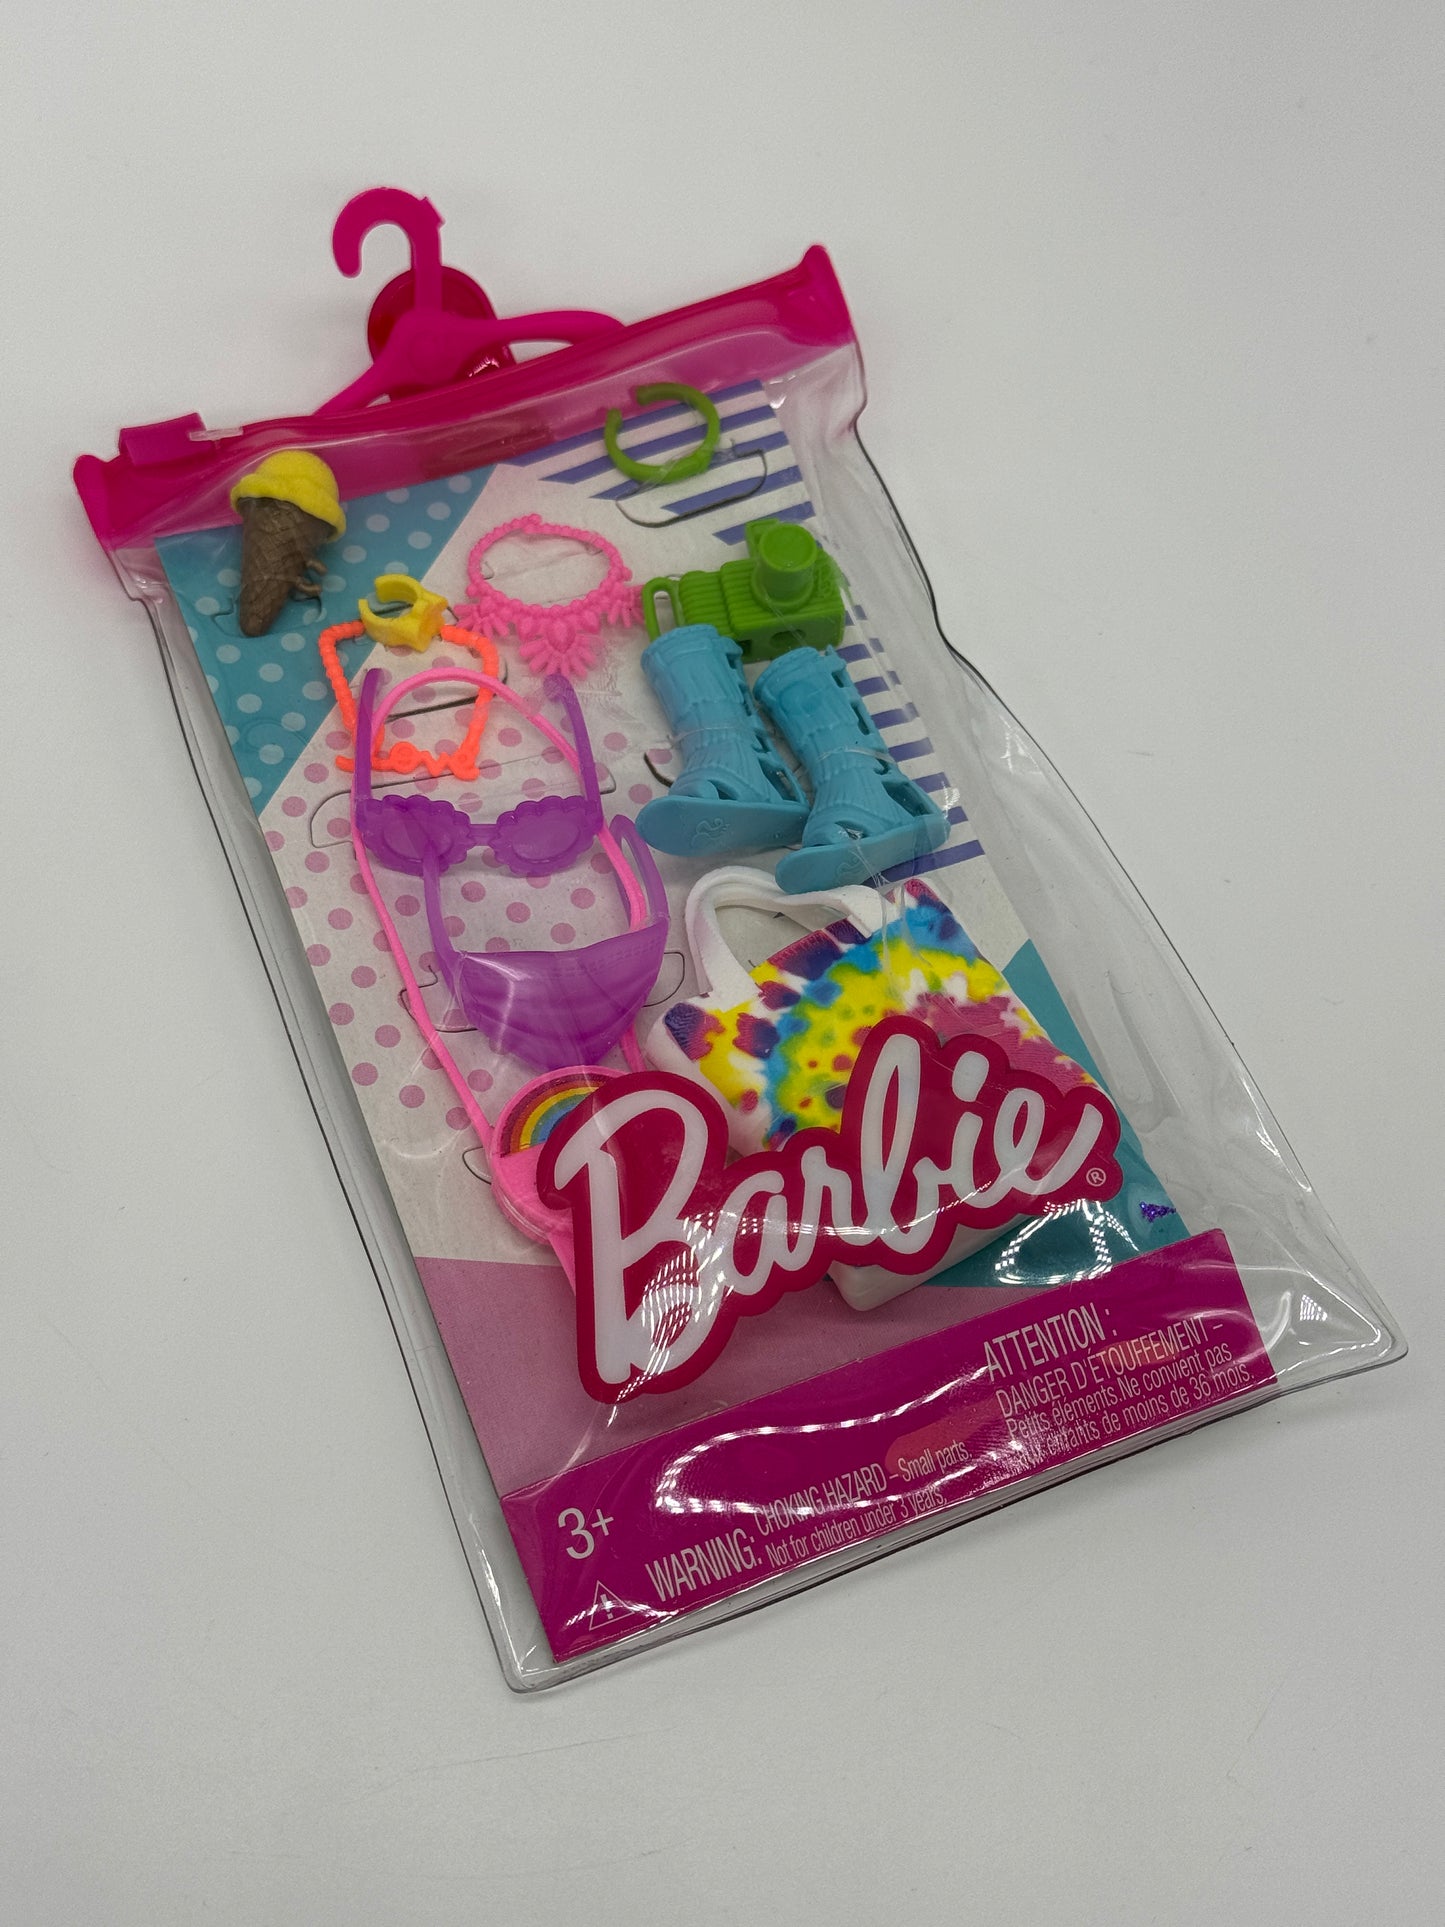 Barbie Fashions Zubehör "Römersandalen, Kamera, Eis, Tasche u.v.m."